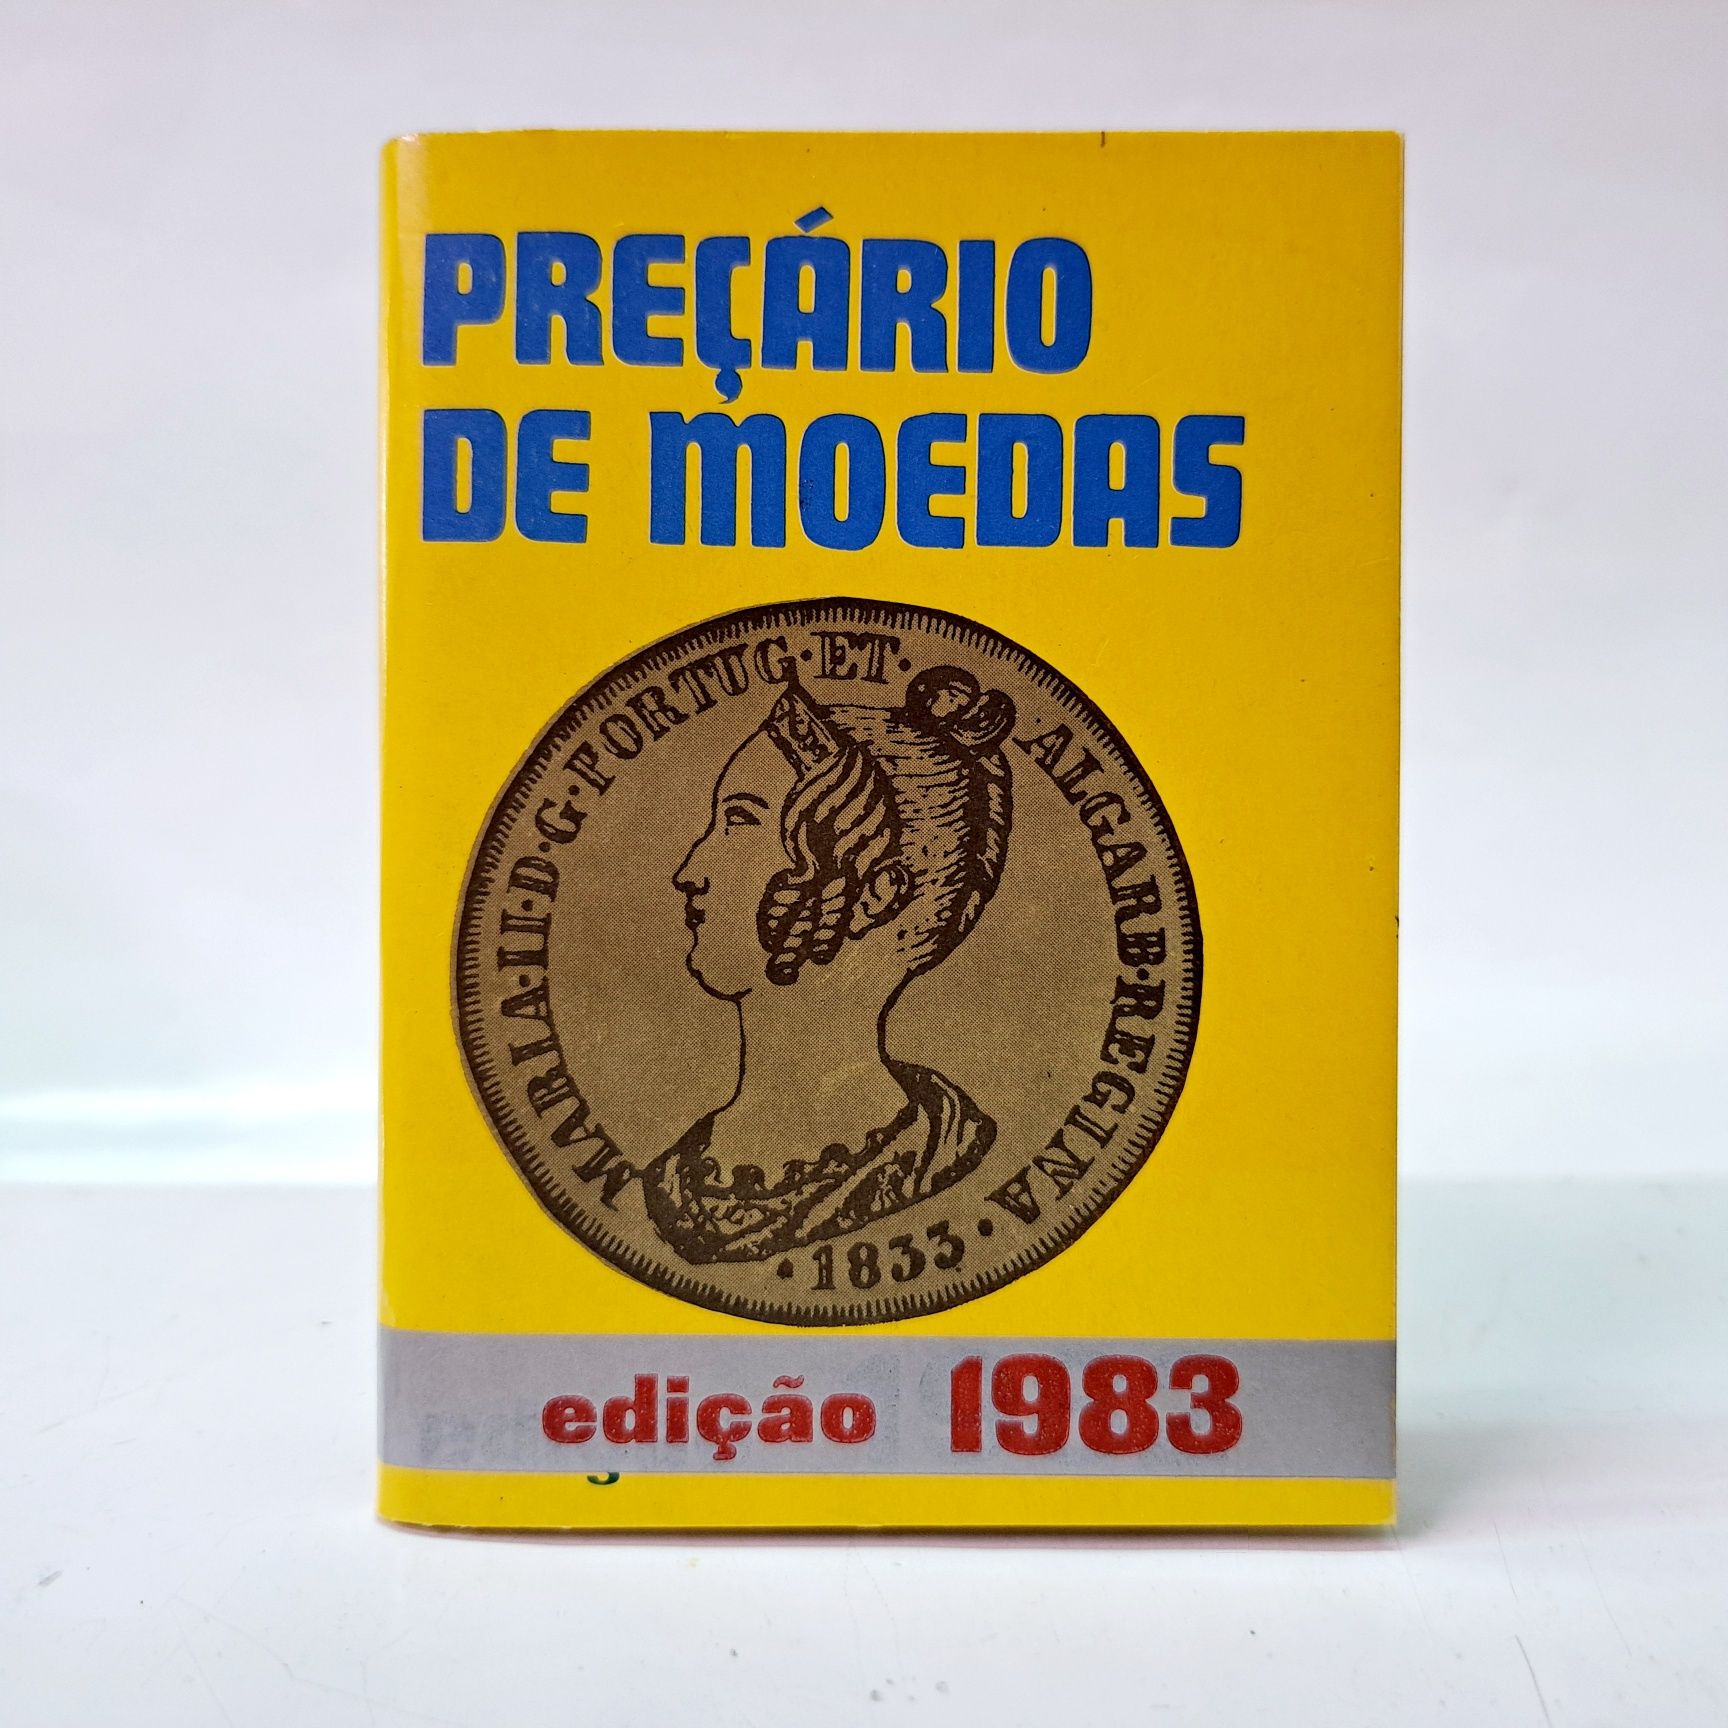 Preçário de Moedas 1983

Edição de 1983

5 €